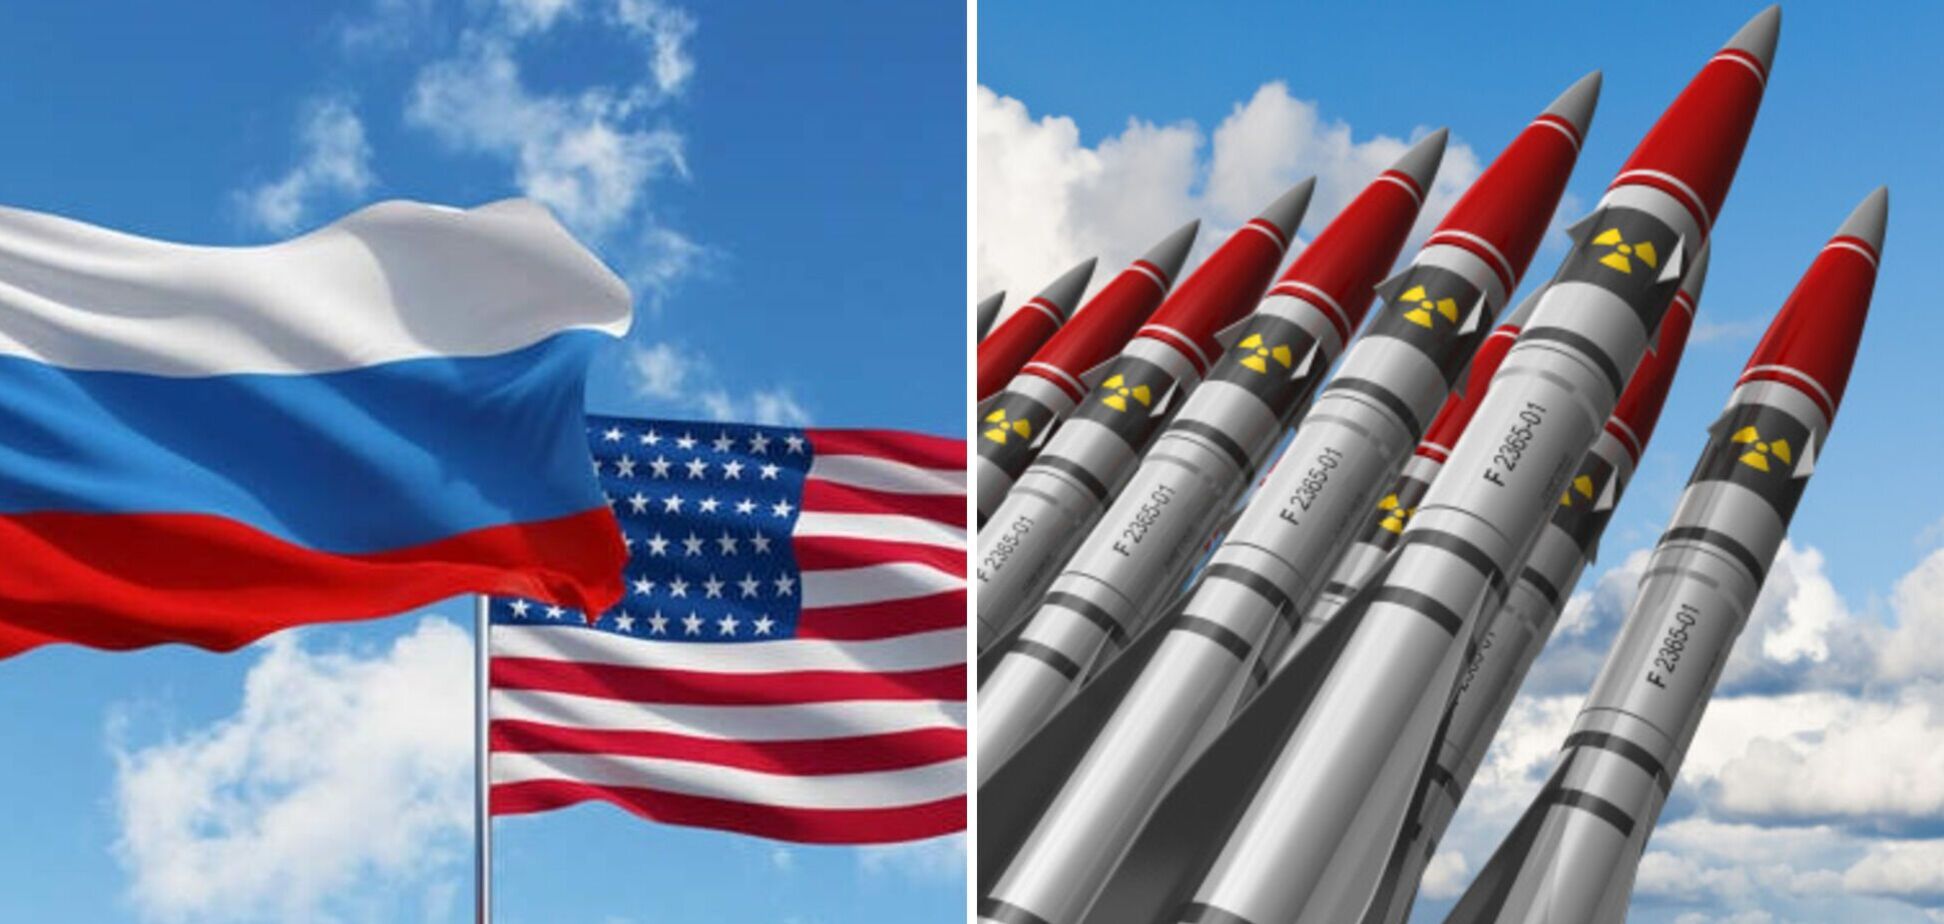 США готові оперативно розпочати обговорення з РФ нової системи контролю над ядерним озброєнням – Білий дім